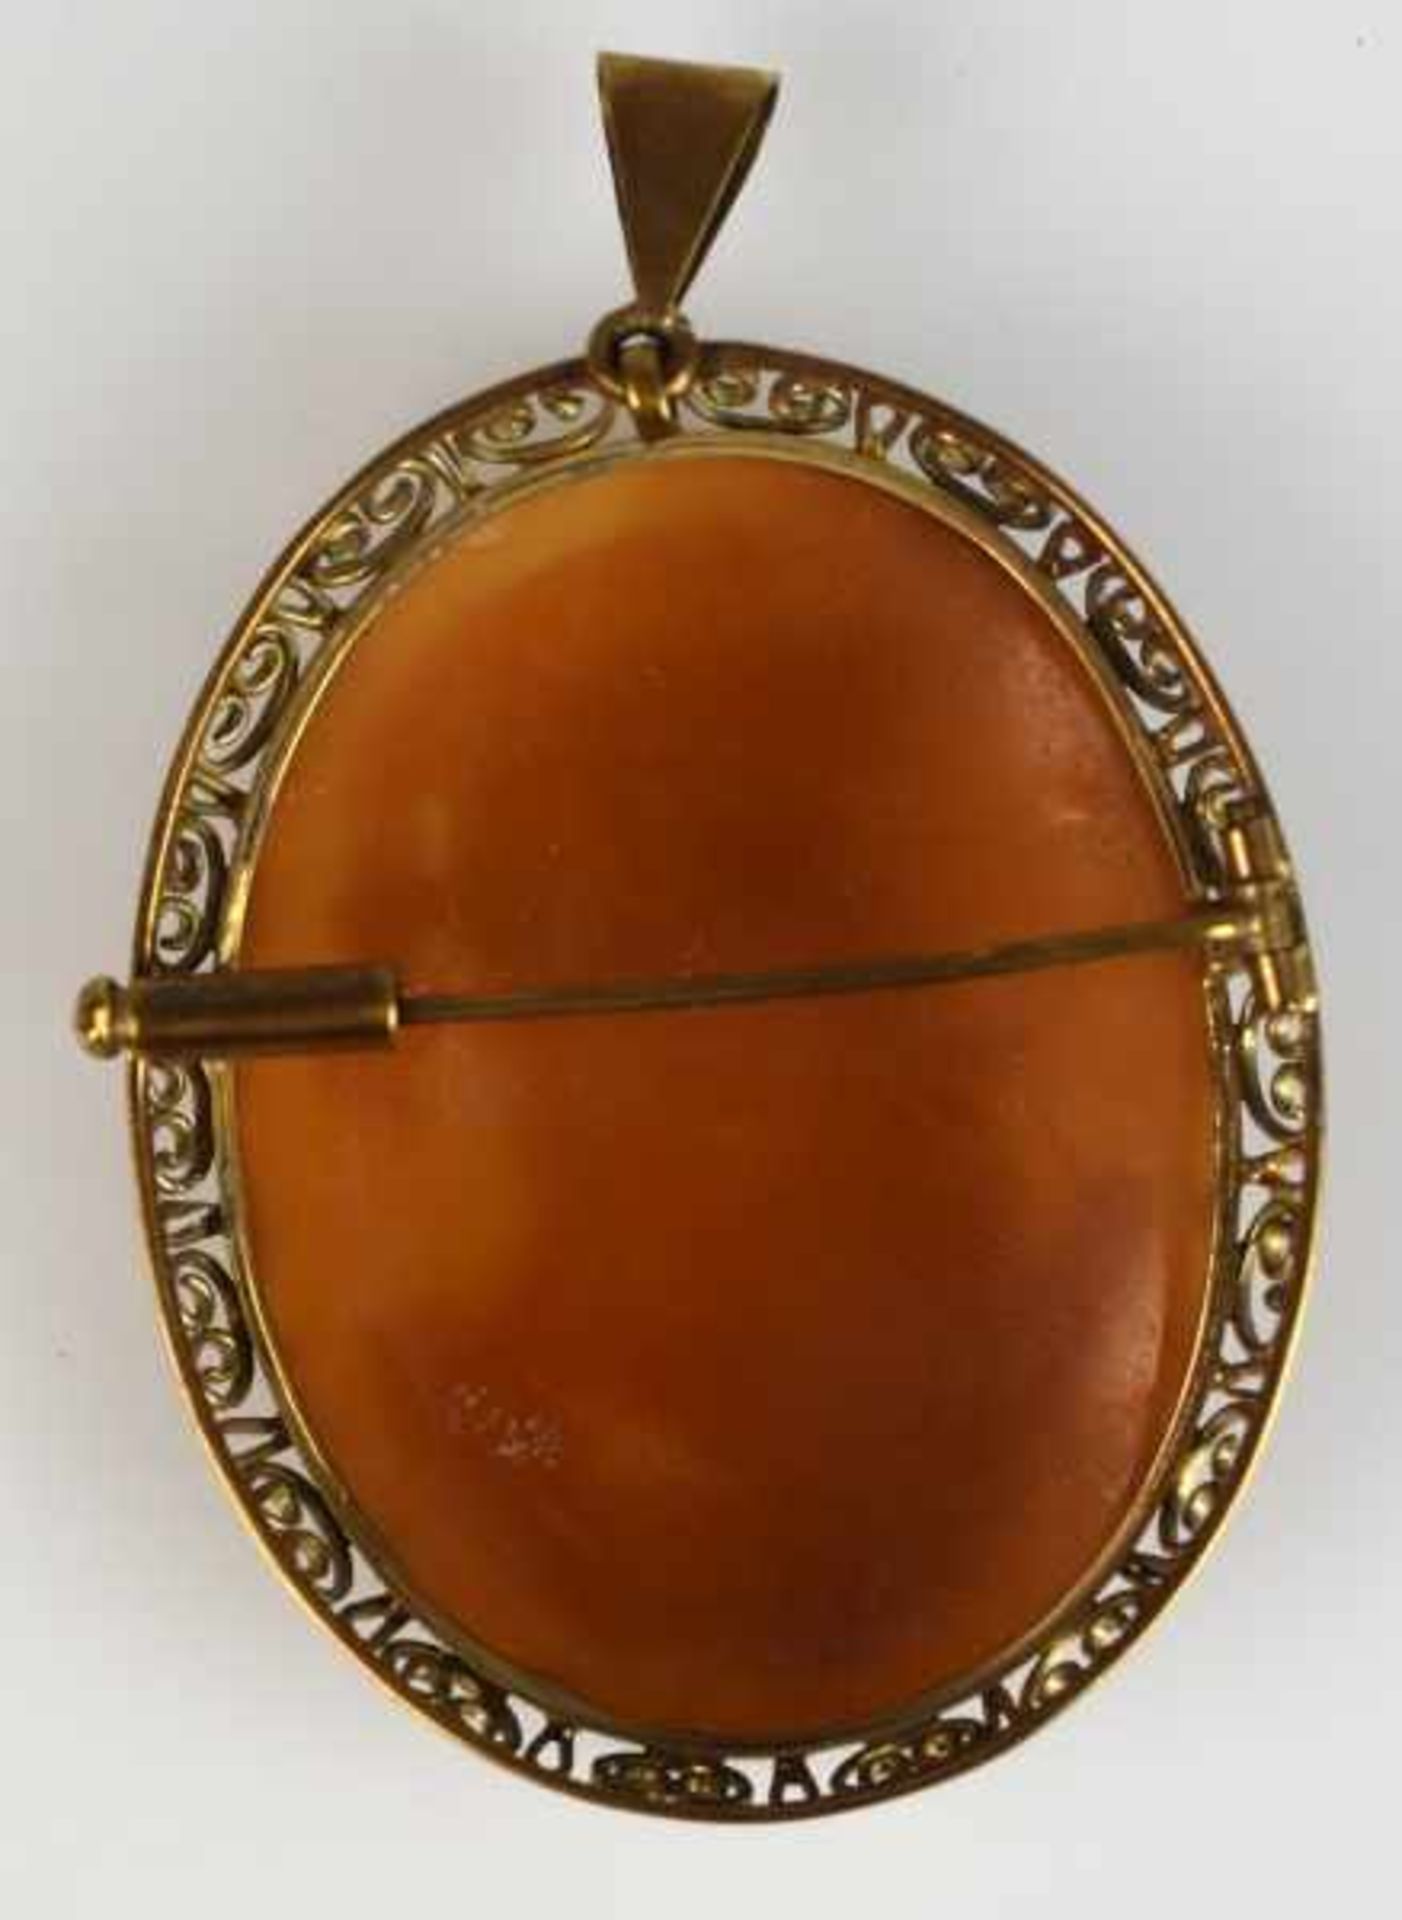 CAMEE oval, antikes Motiv mit Frau und Adler in Muschel geschnitten, durchbrochener Goldrahmen - Image 2 of 3